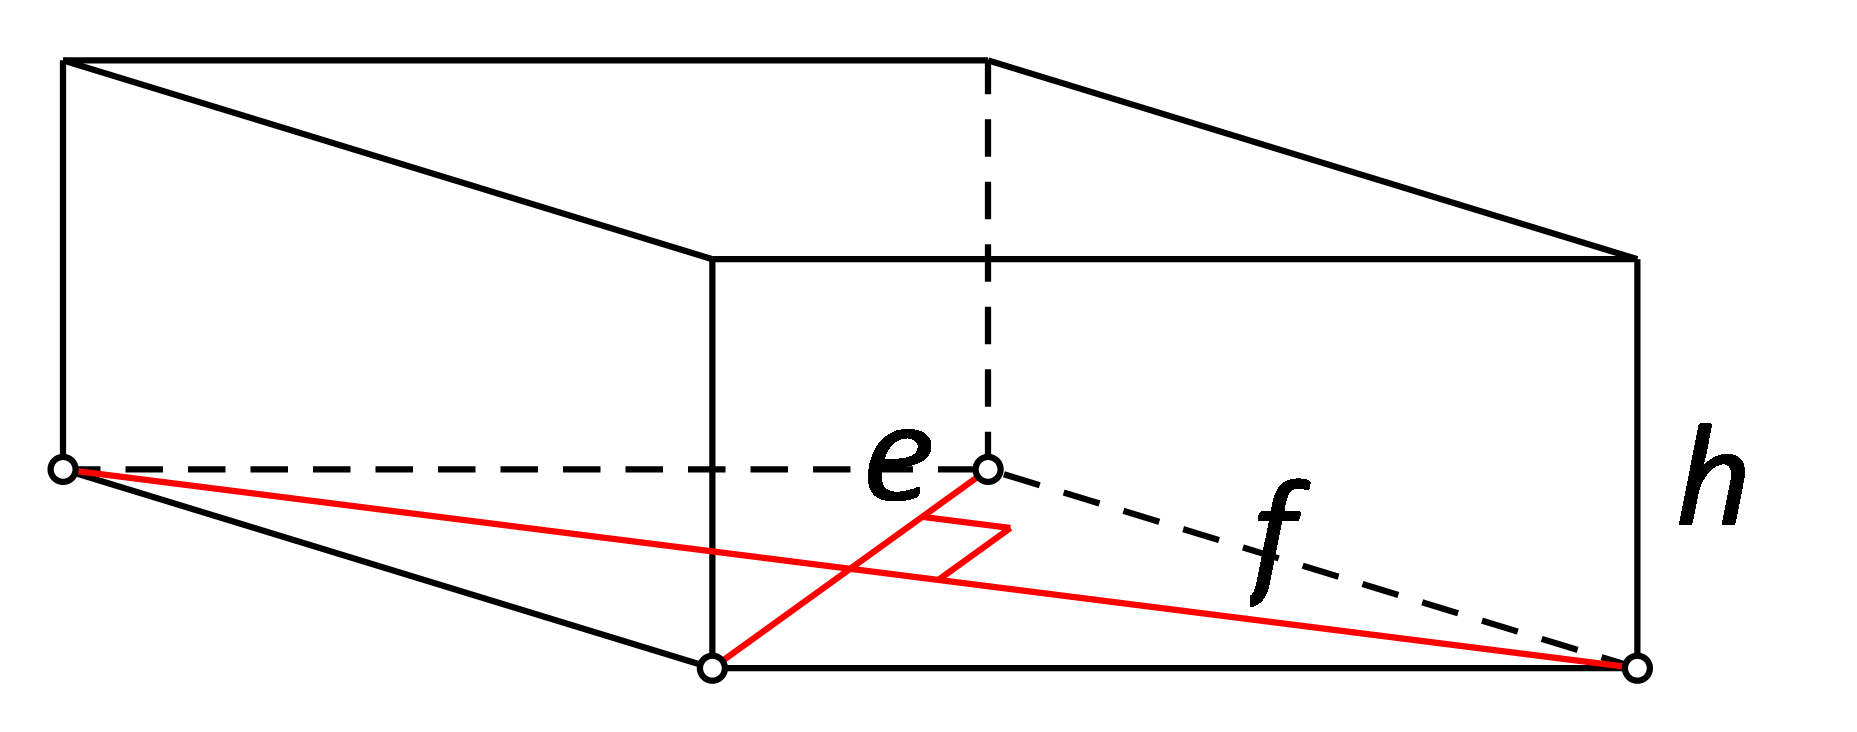 Slika prikazuje kolač oblika četverostrane prizme kojoj je baza romb.